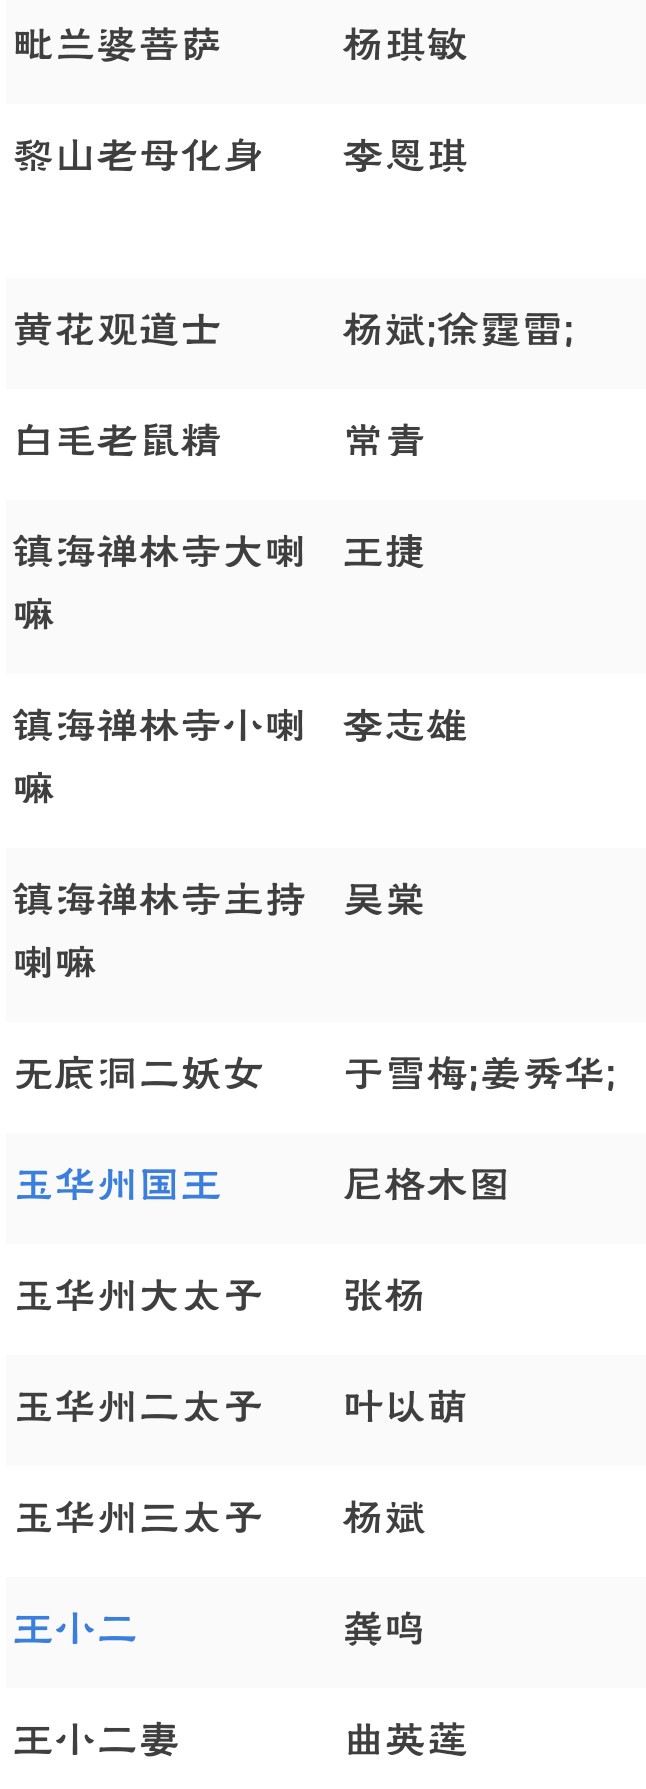 《西游记》老版1986年杨洁执导央视版电视剧演员表